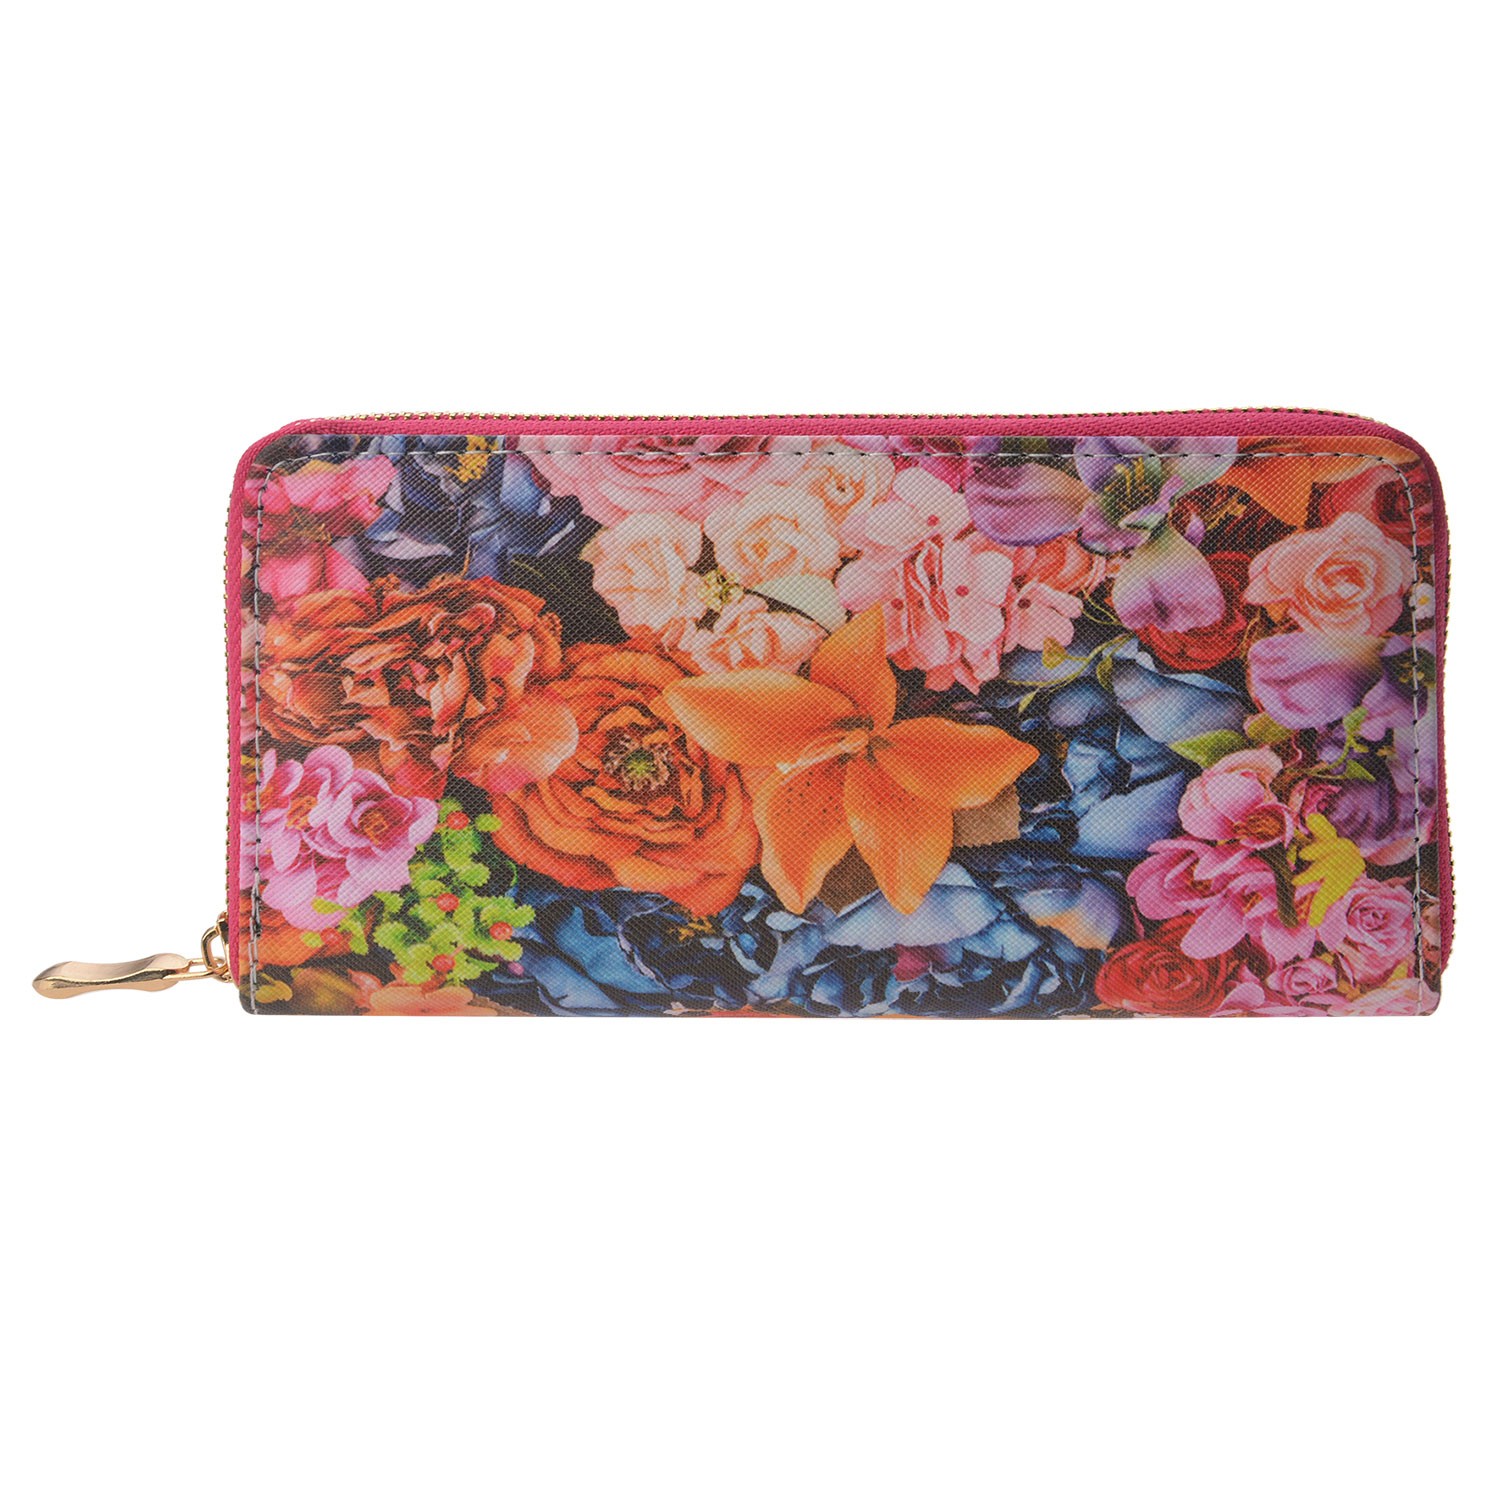 Středně velká peněženka s barevnými květinami. - 9*14 cm Clayre & Eef